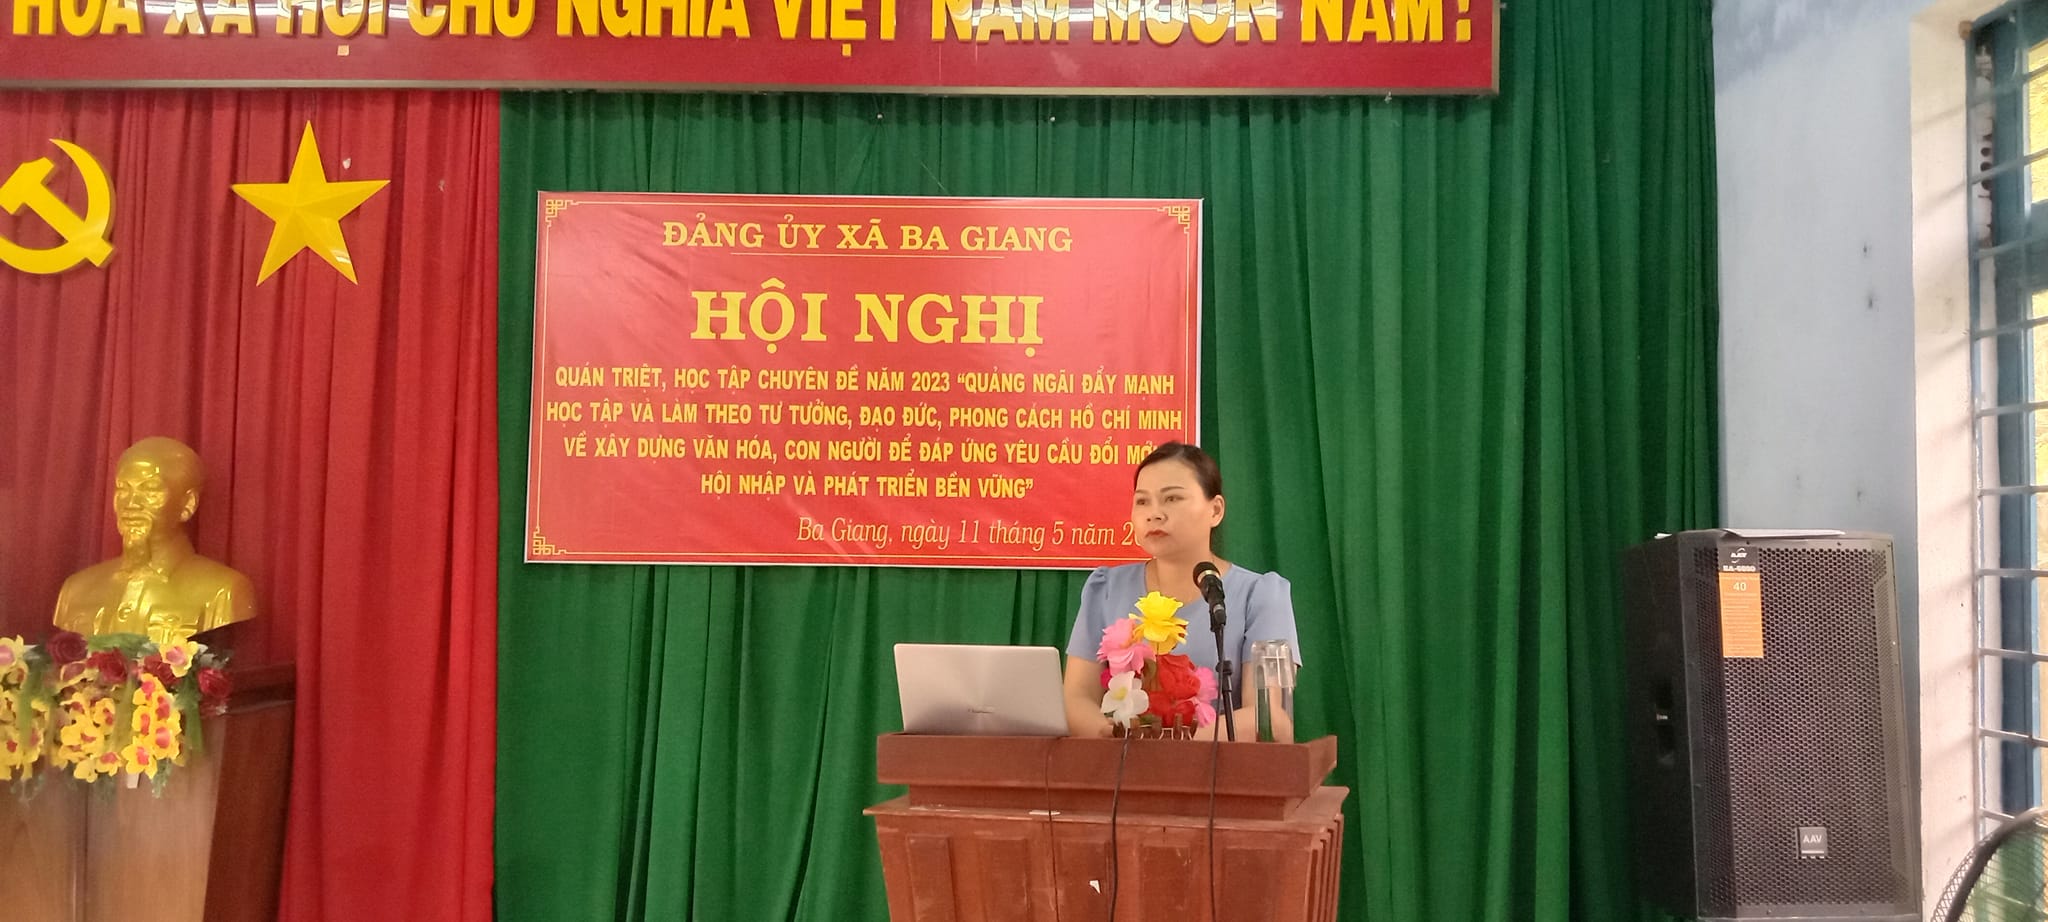 Đảng ủy xã Ba Giang tổ chức Hội nghị quán triệt, học tập chuyên đề năm 2023